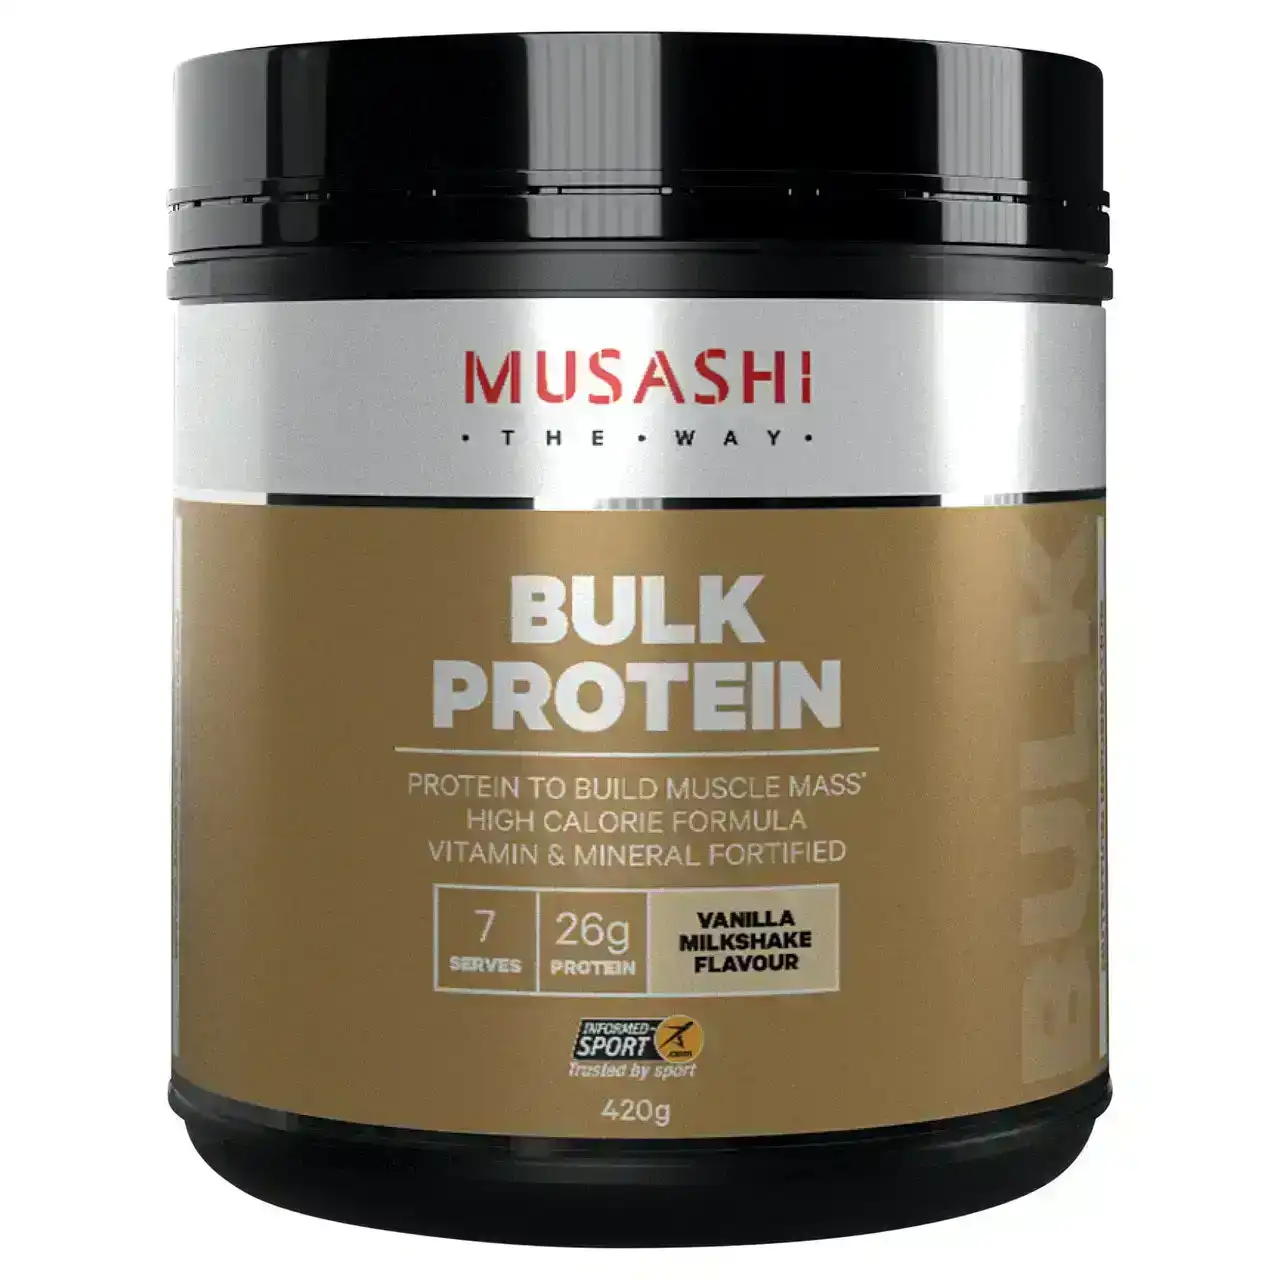 Musashi Bulk Protein Vanilla Milkshake 420g